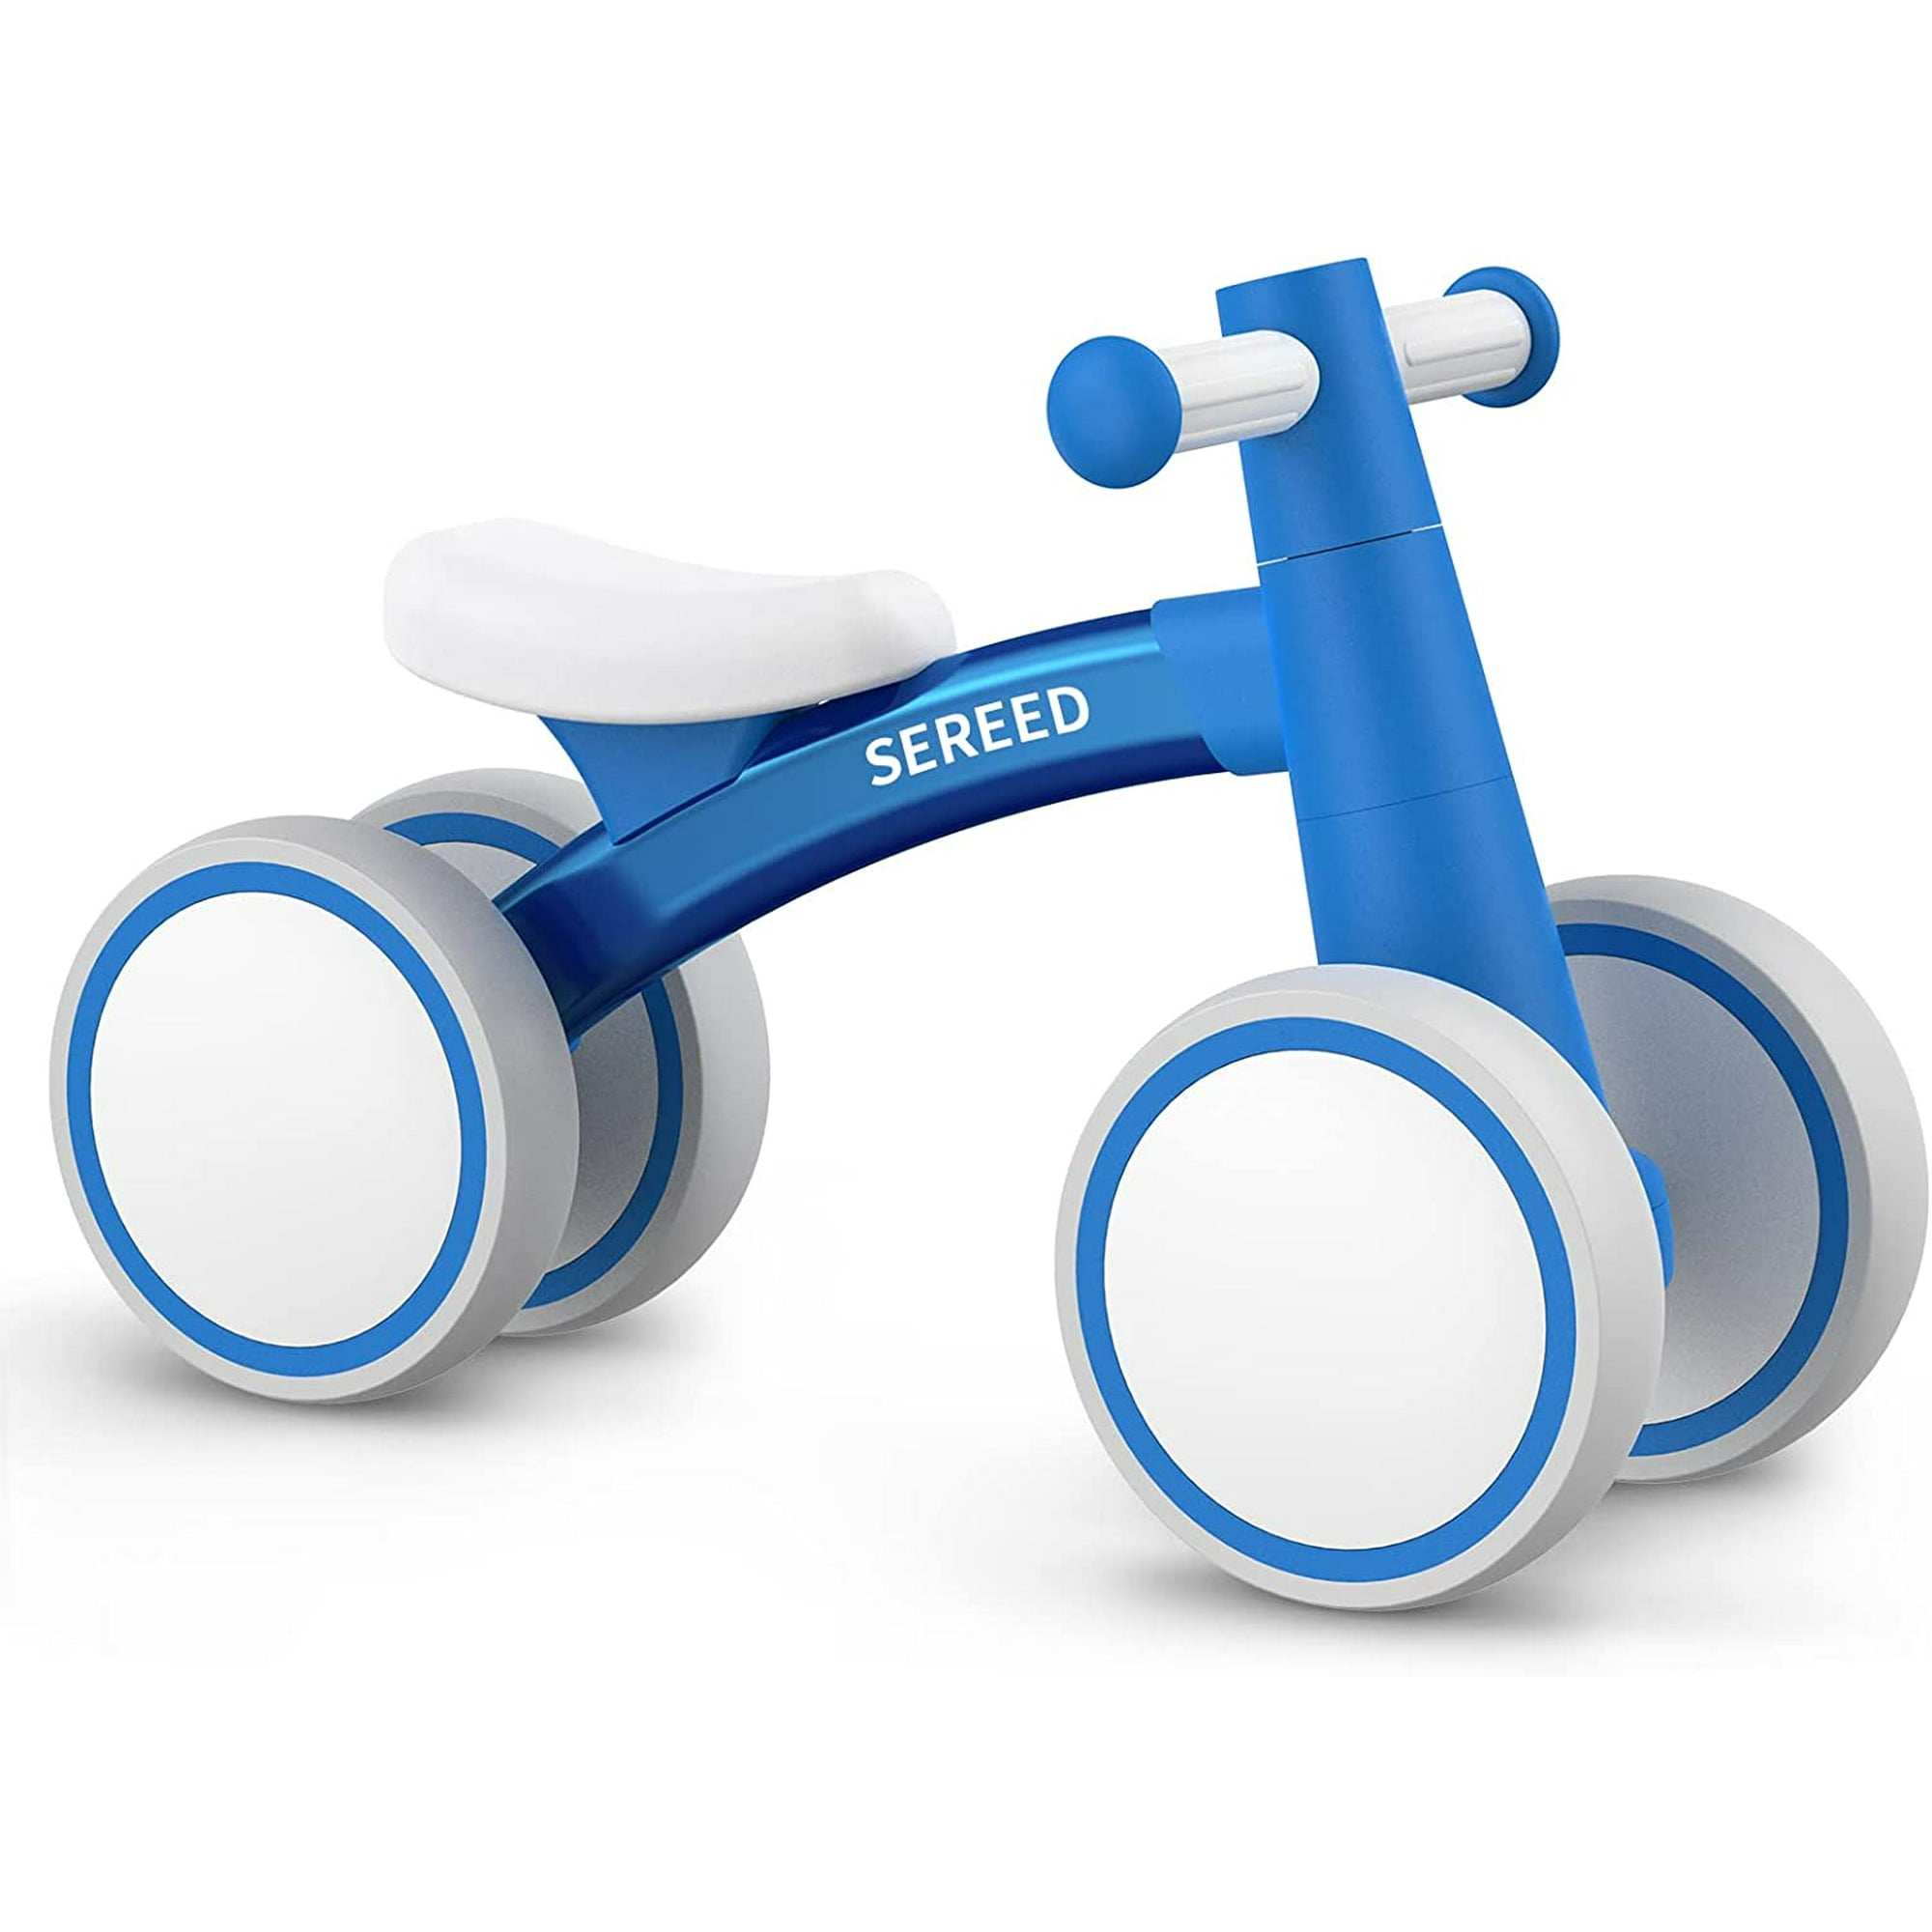 Triciclos 3 en 1 para niños y niñas de 2 a 4 años de edad, con pedal  desmontable y ruedas de entrenamiento, bicicleta de equilibrio para bebés